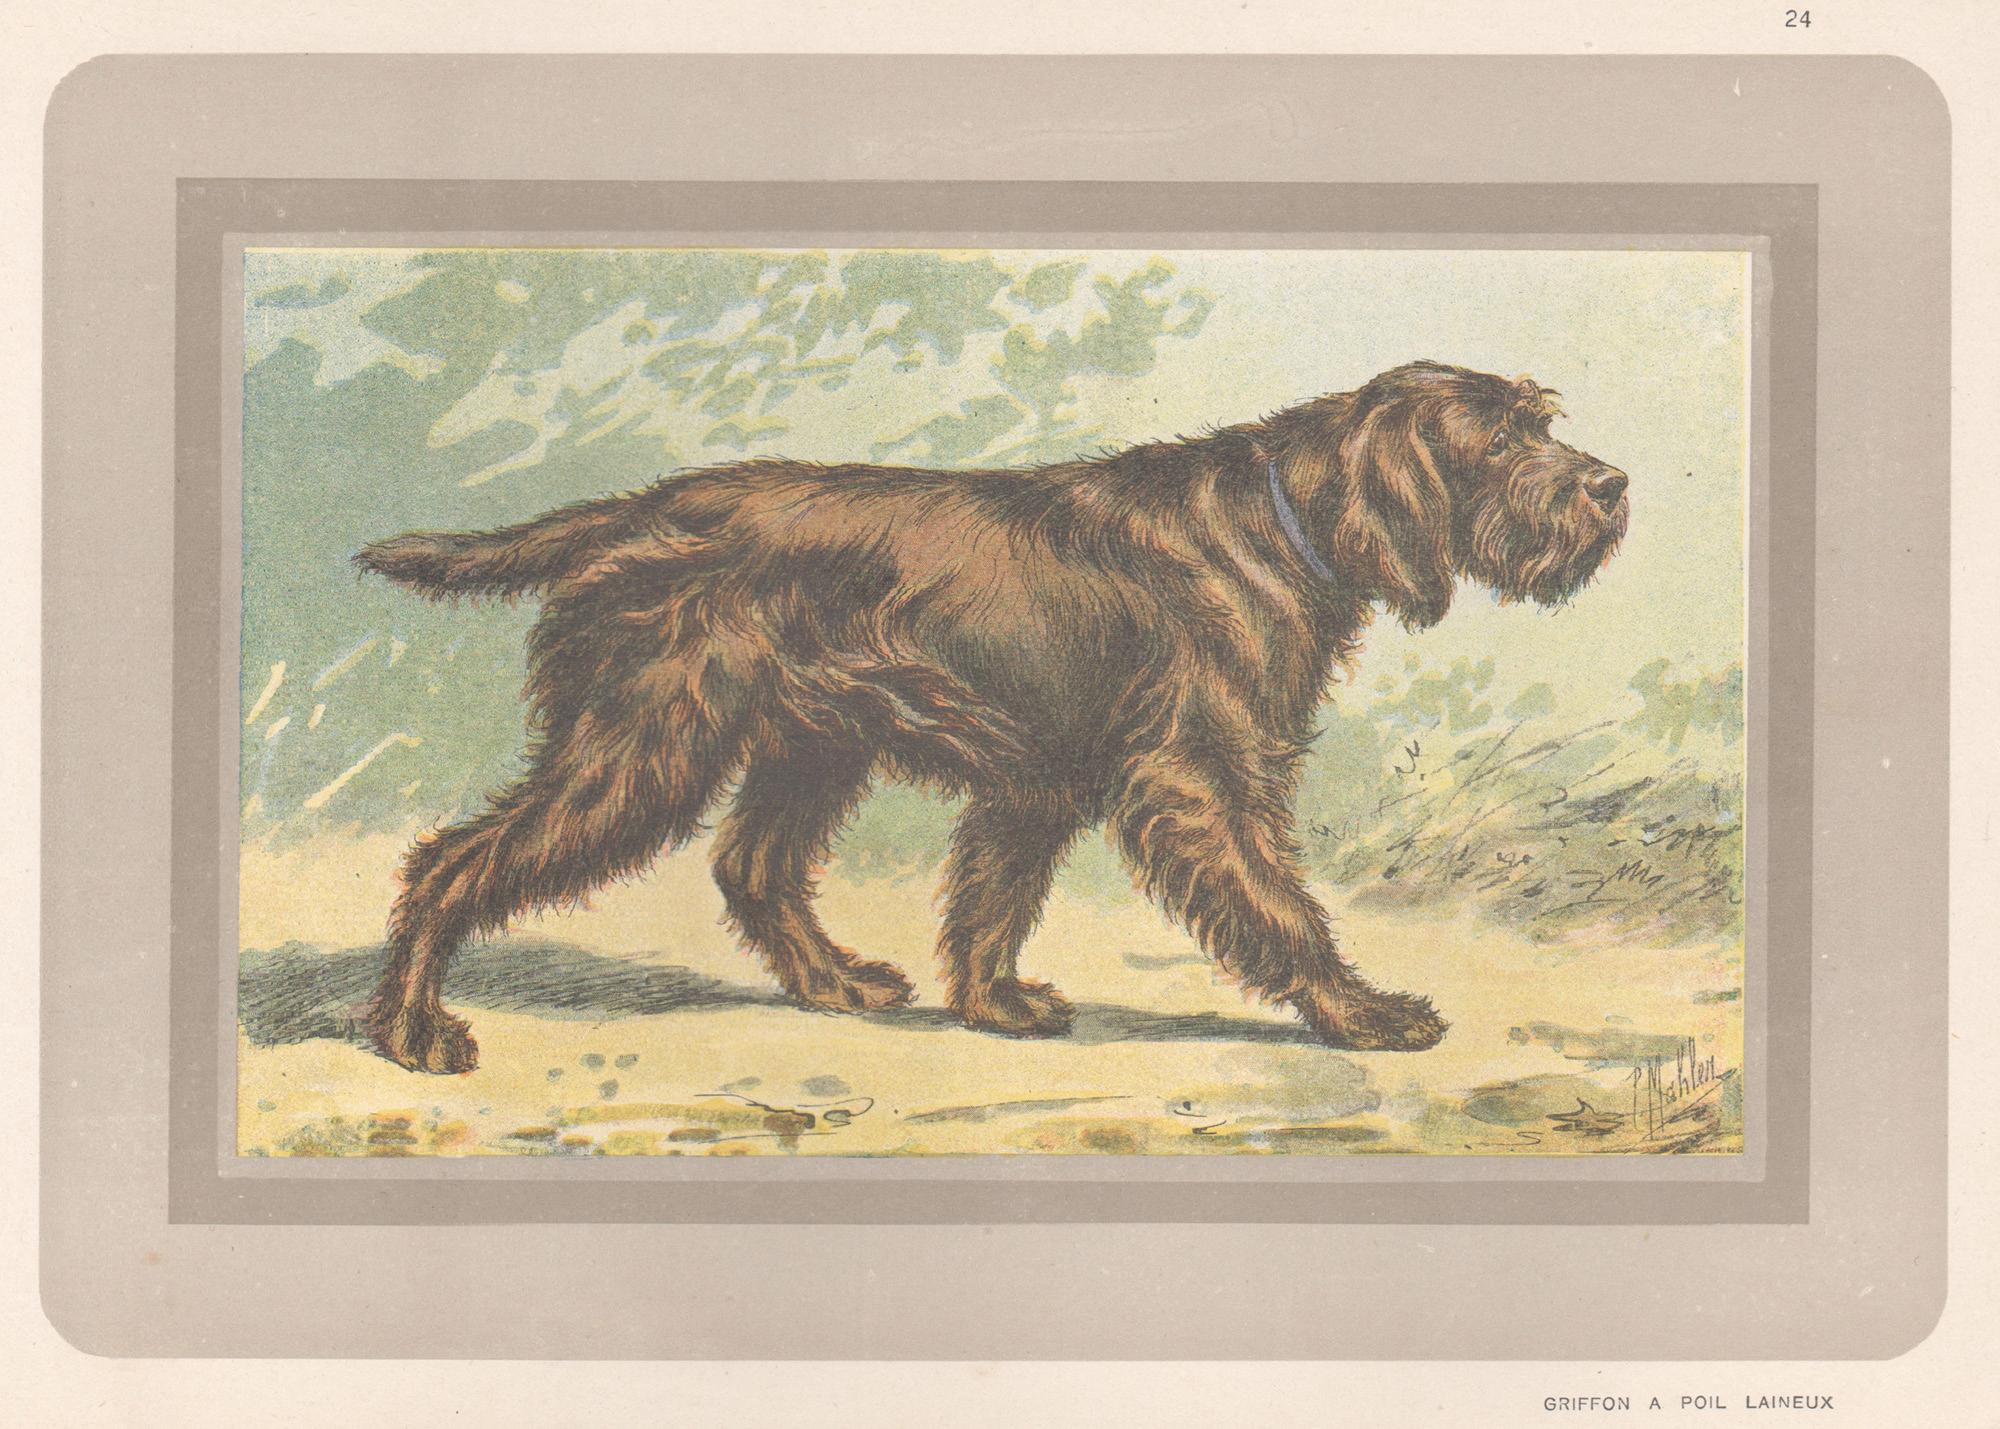 P. Mahler Animal Print – Griffon A Poil Laineux, Französischer Chromolithographiedruck mit Hund, 1931